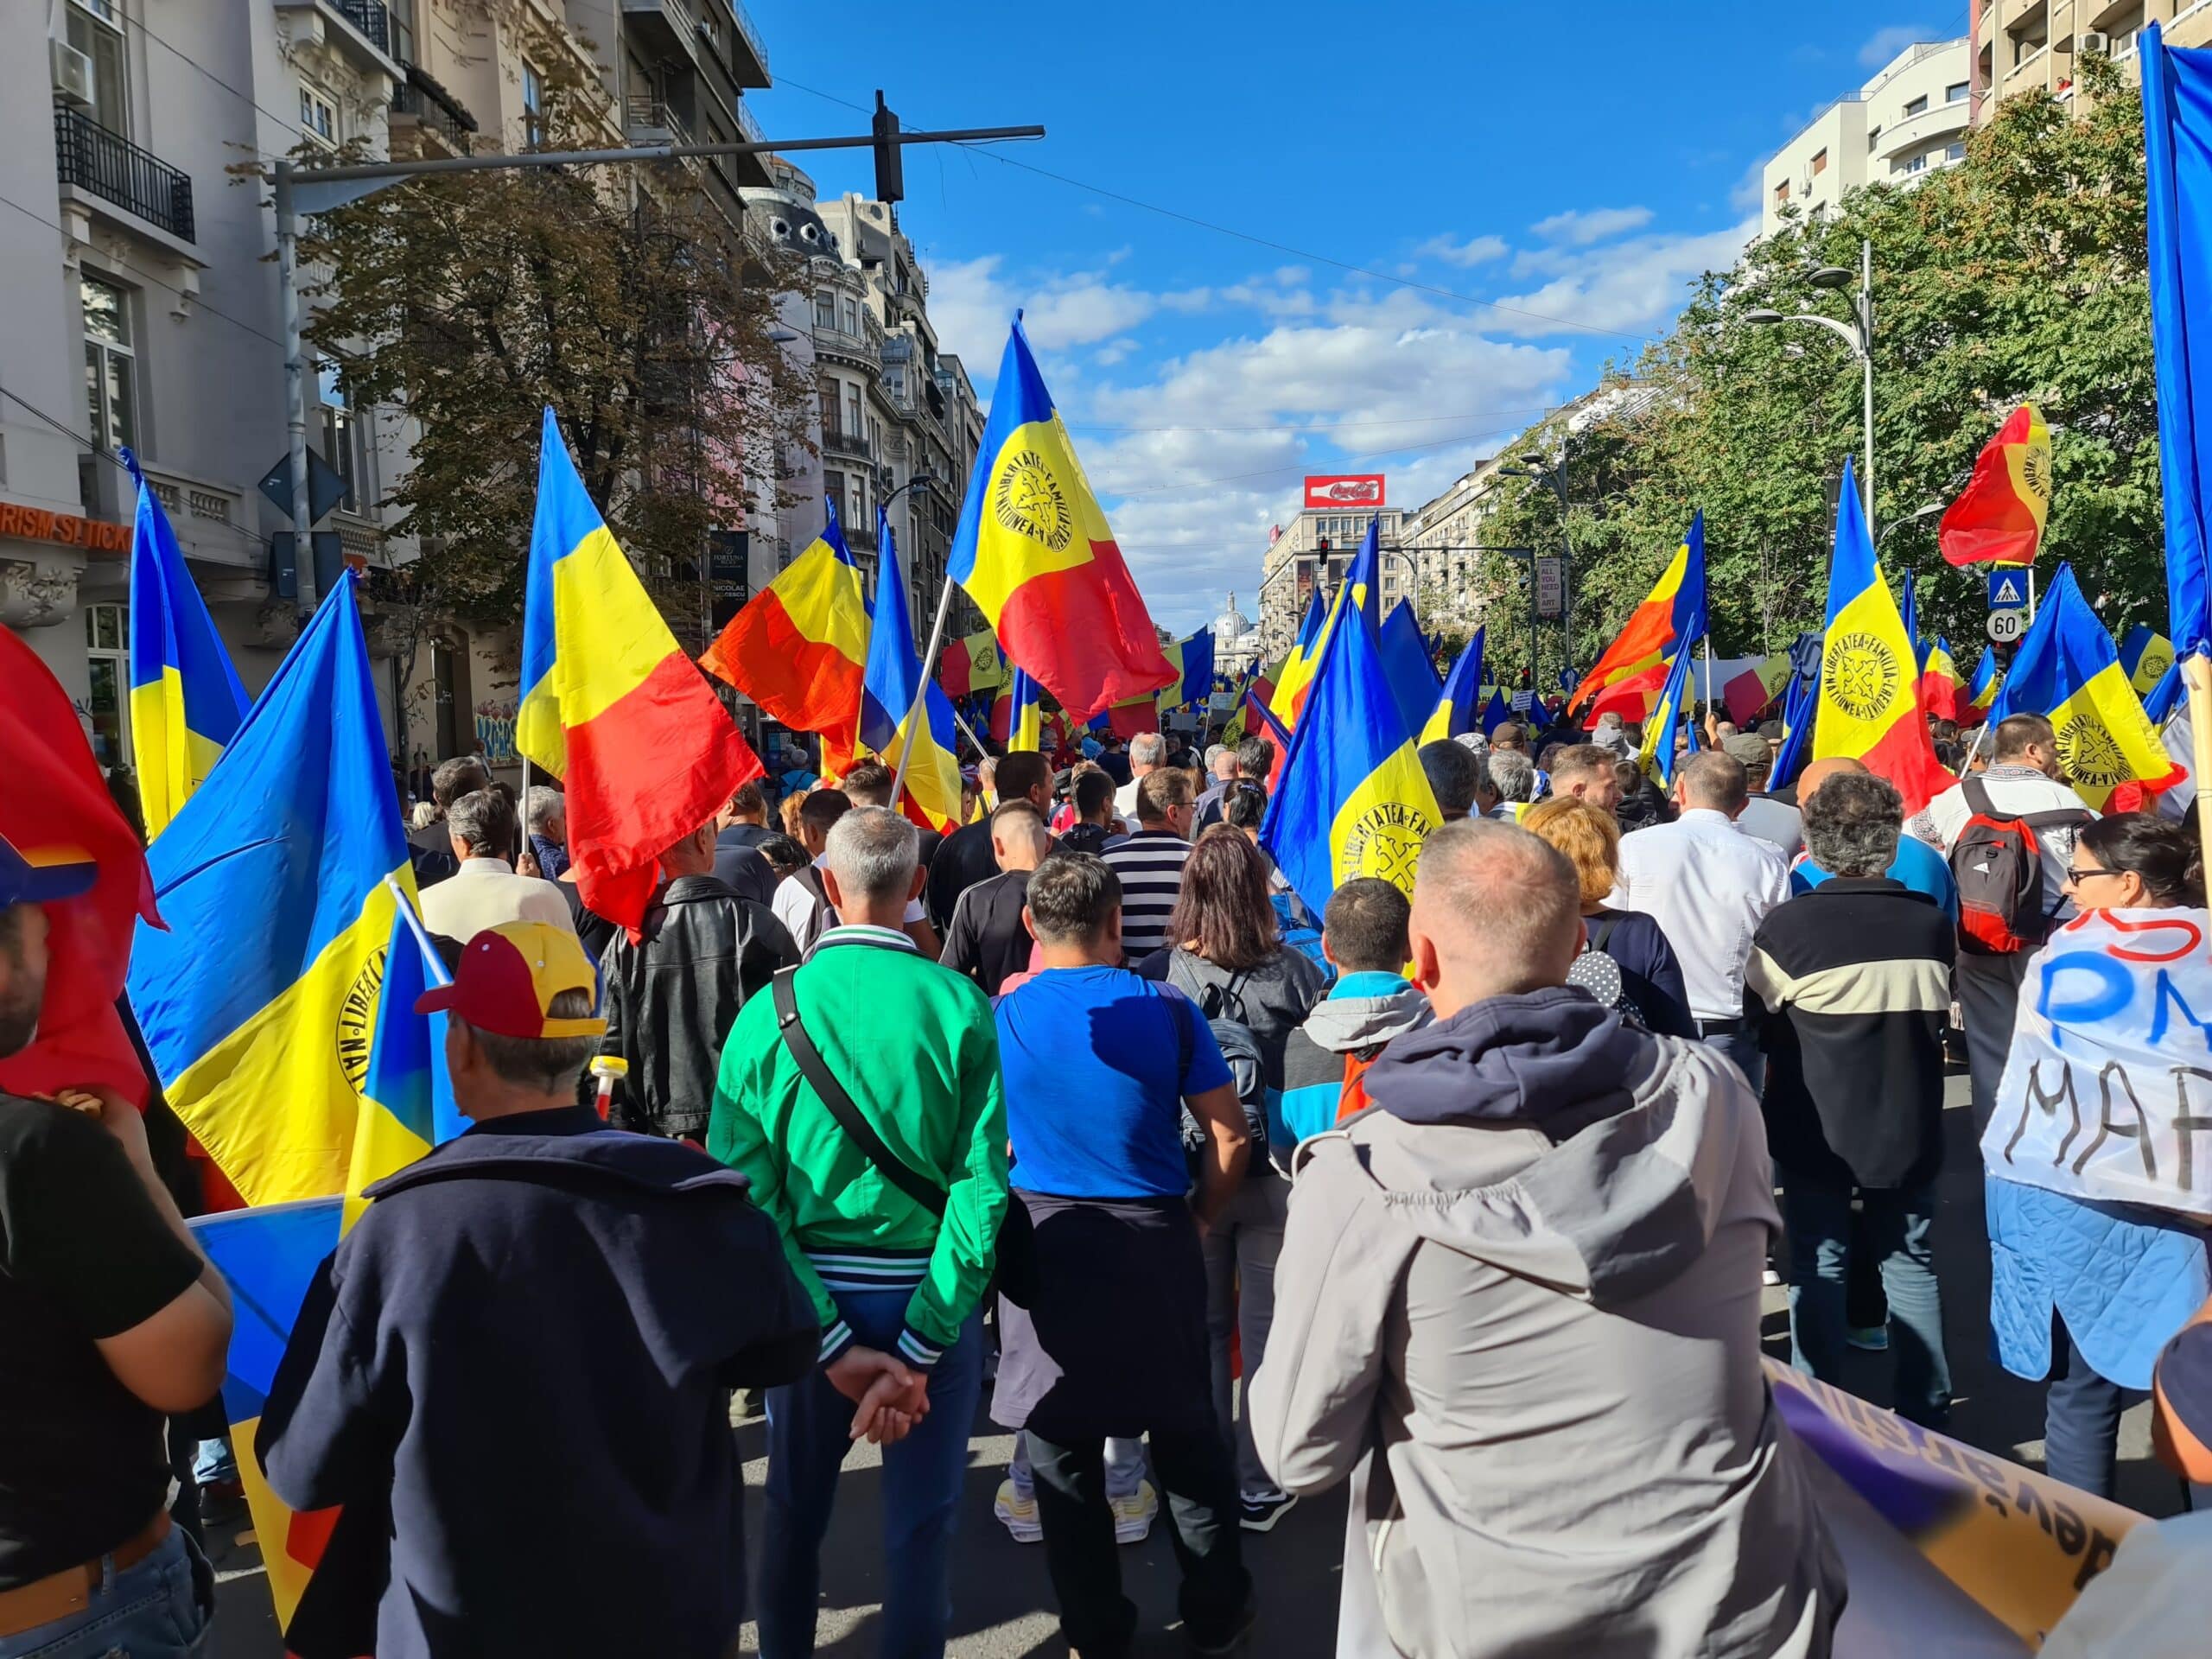 Unde pot fi găsite persoane apte pentru a conduce Statul Eșuat numit România ? – CRITICII.RO